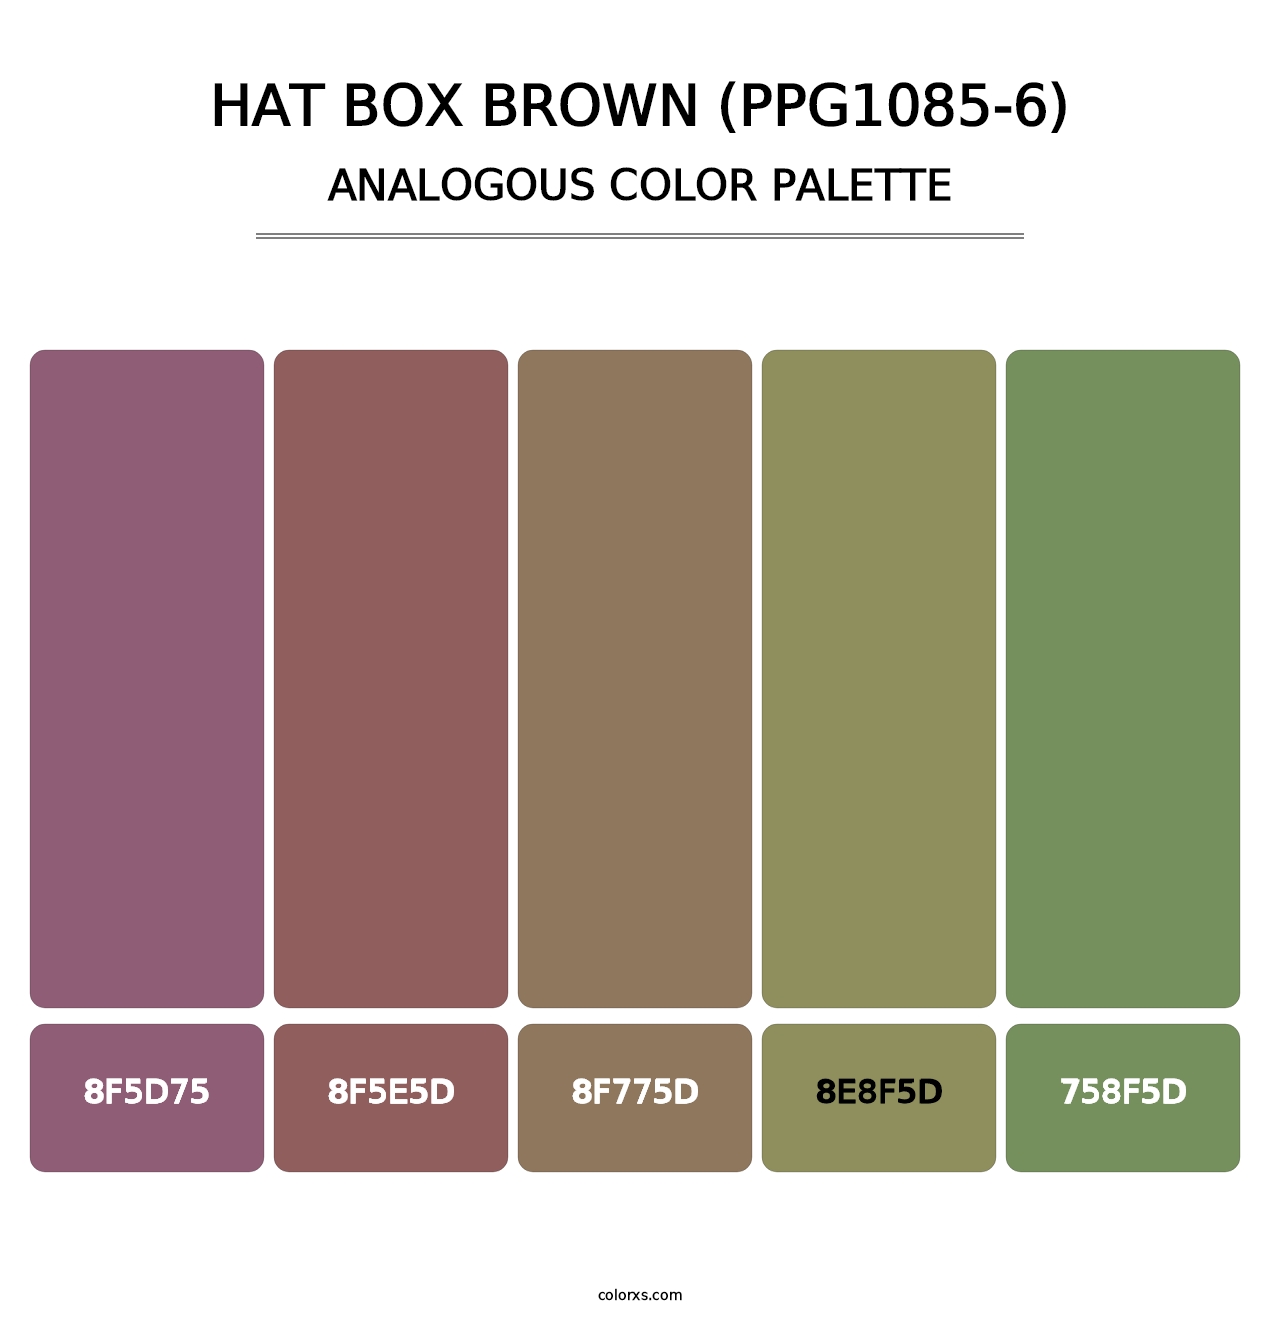 Hat Box Brown (PPG1085-6) - Analogous Color Palette